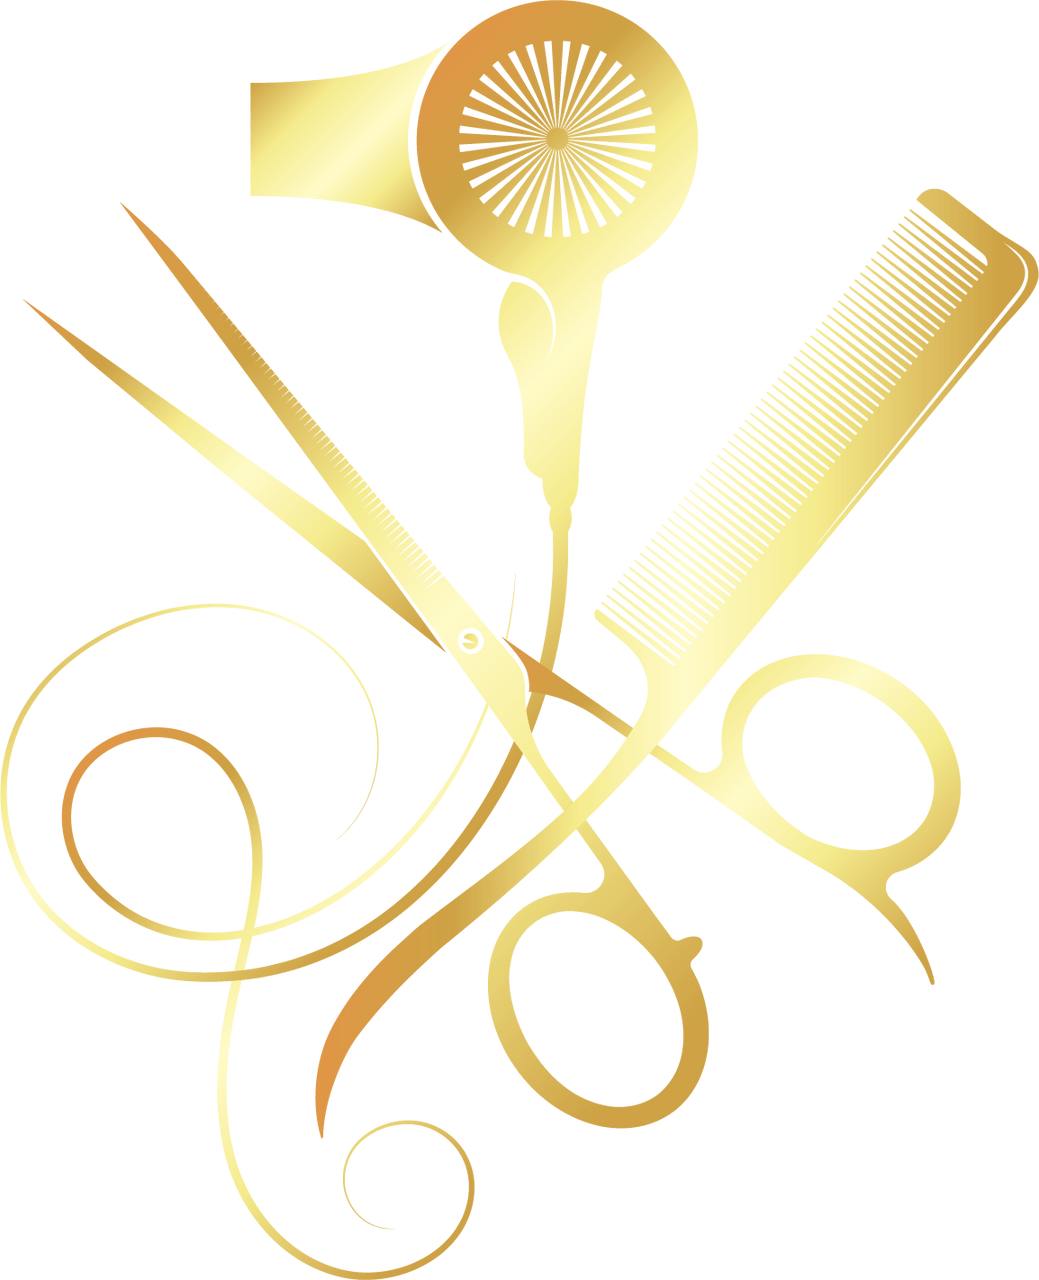 Scissors comb and hair dryer golden symbol